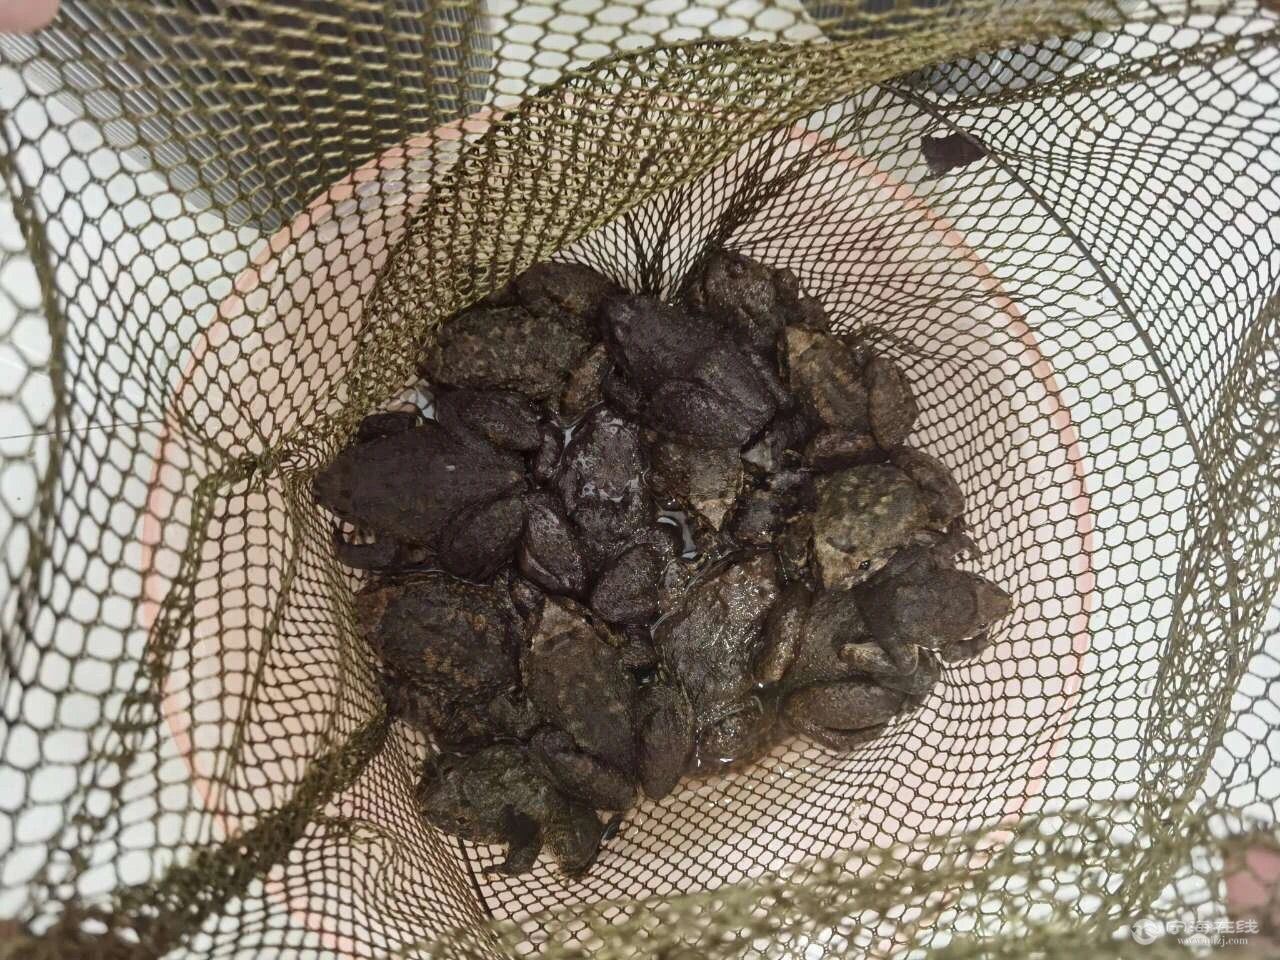 宁海两男子抓了17只野生石蛙,涉嫌非法狩猎